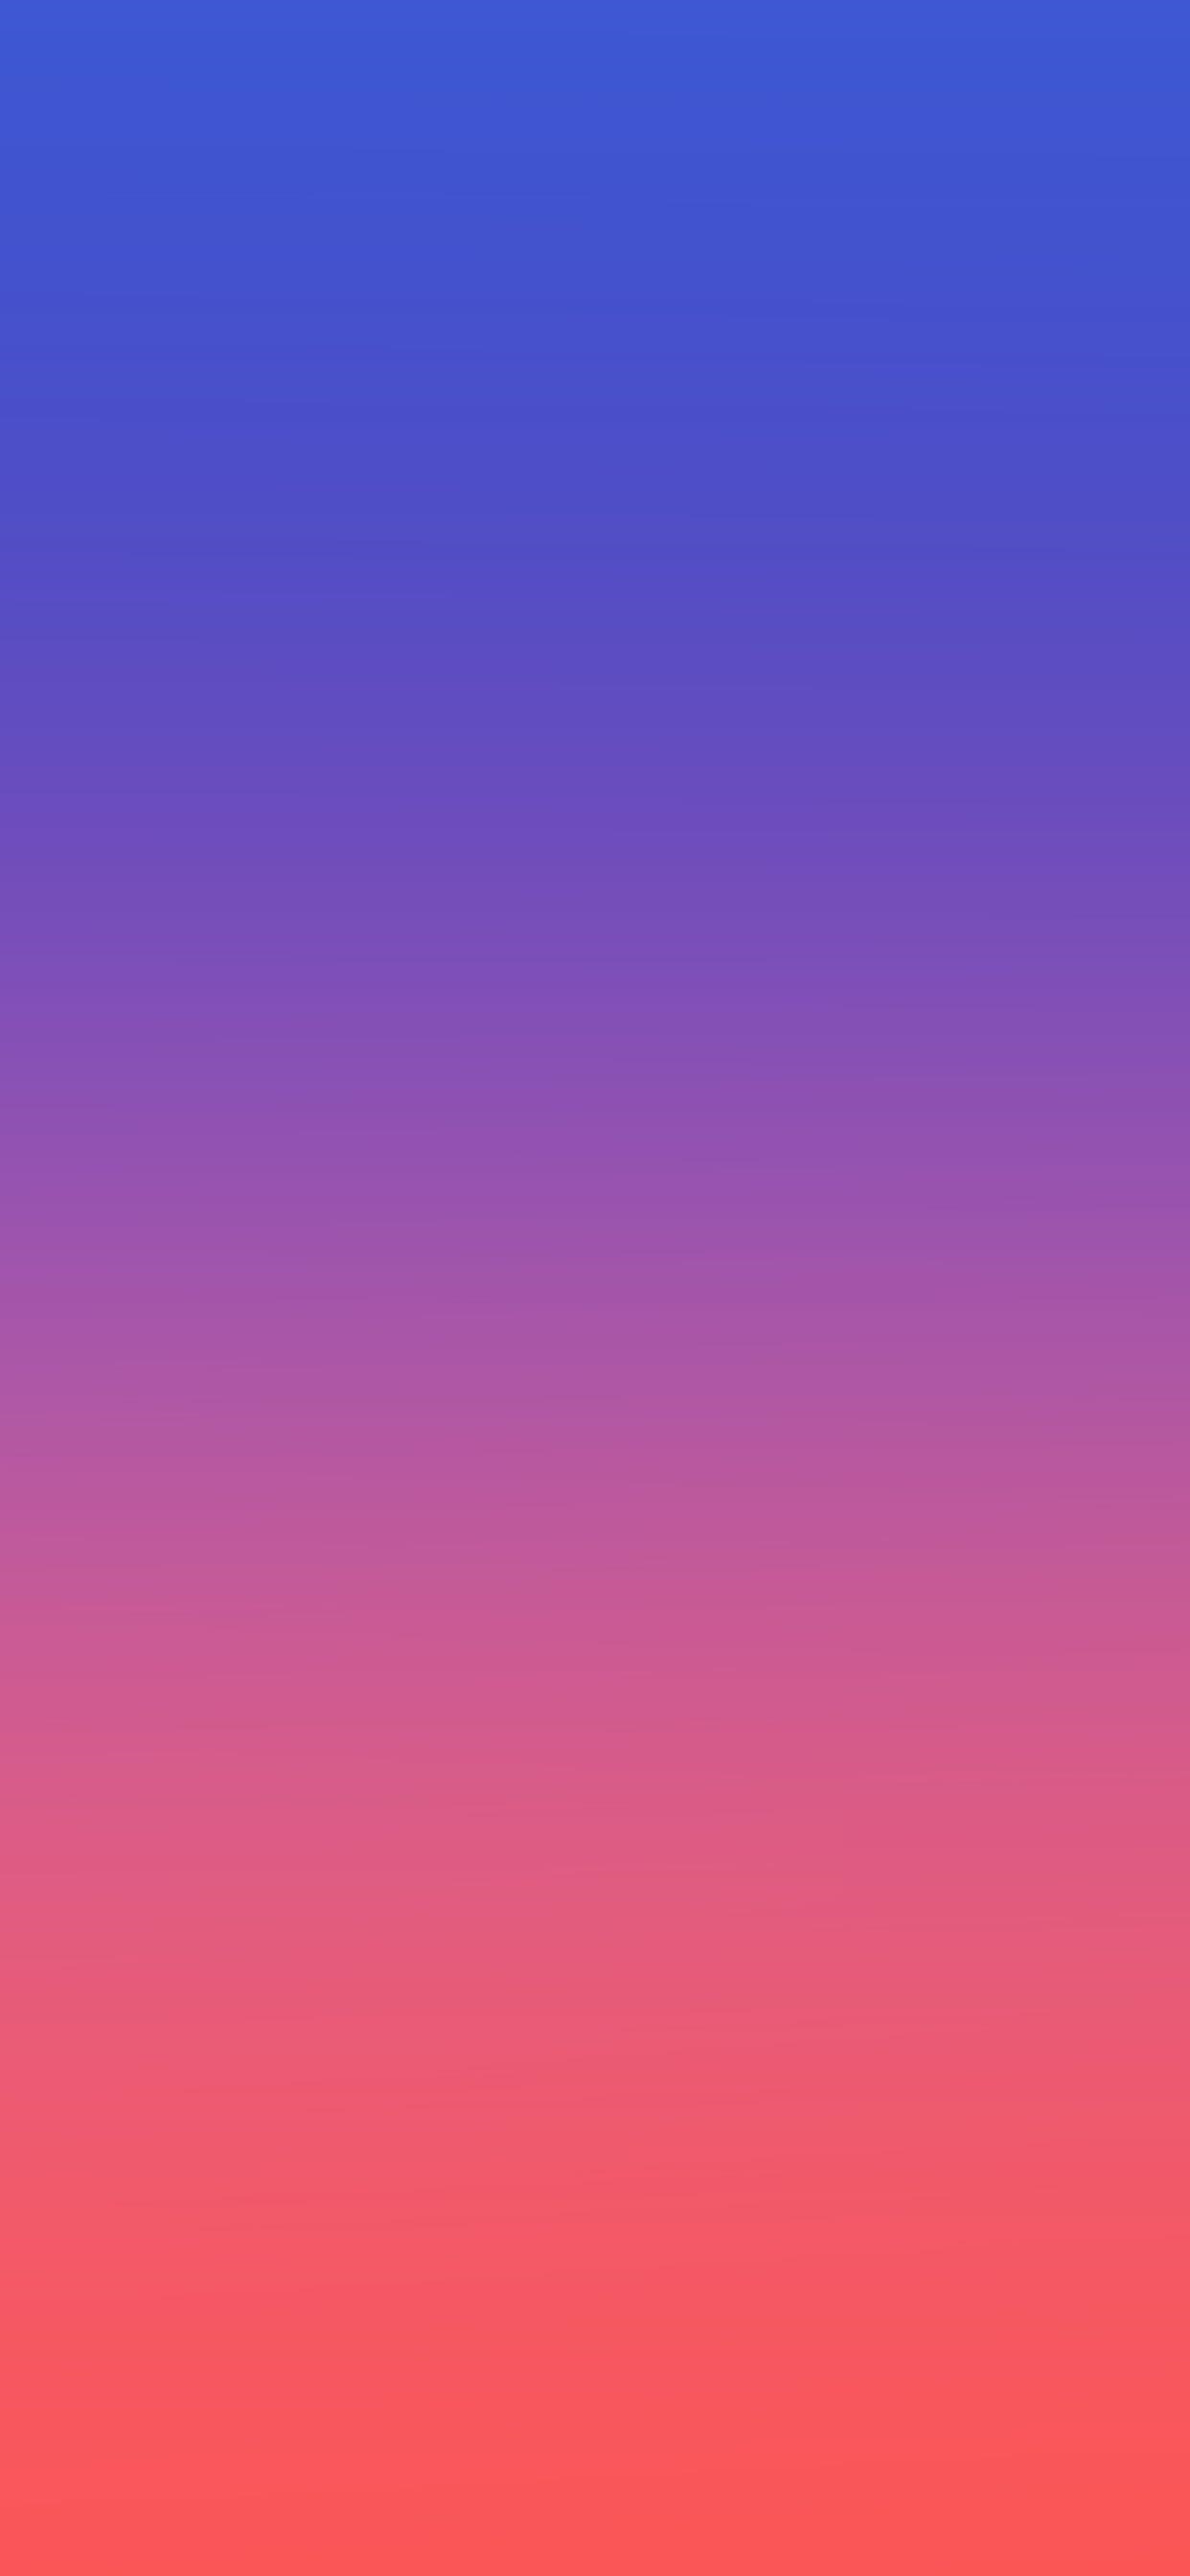 samsung wallpaper,blue,sky,violet,pink,purple